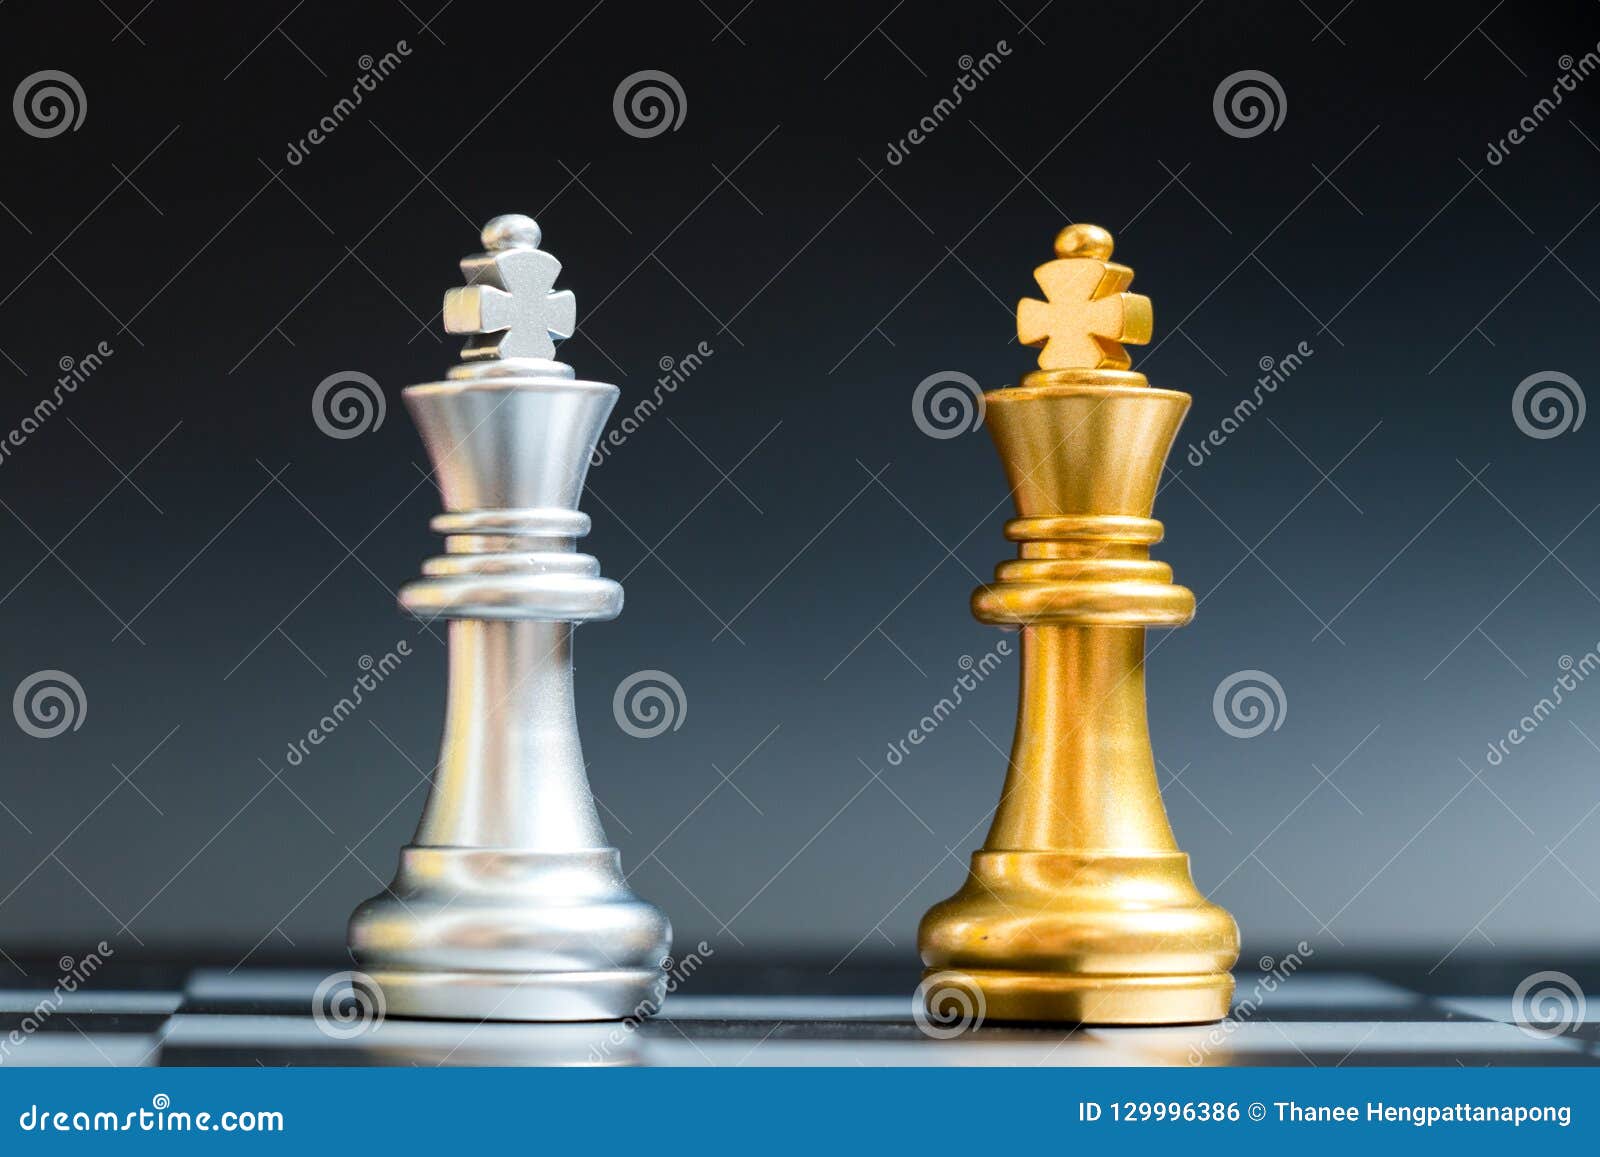 Posição do rei do ouro do jogo de xadrez e fundo de prata, conceito